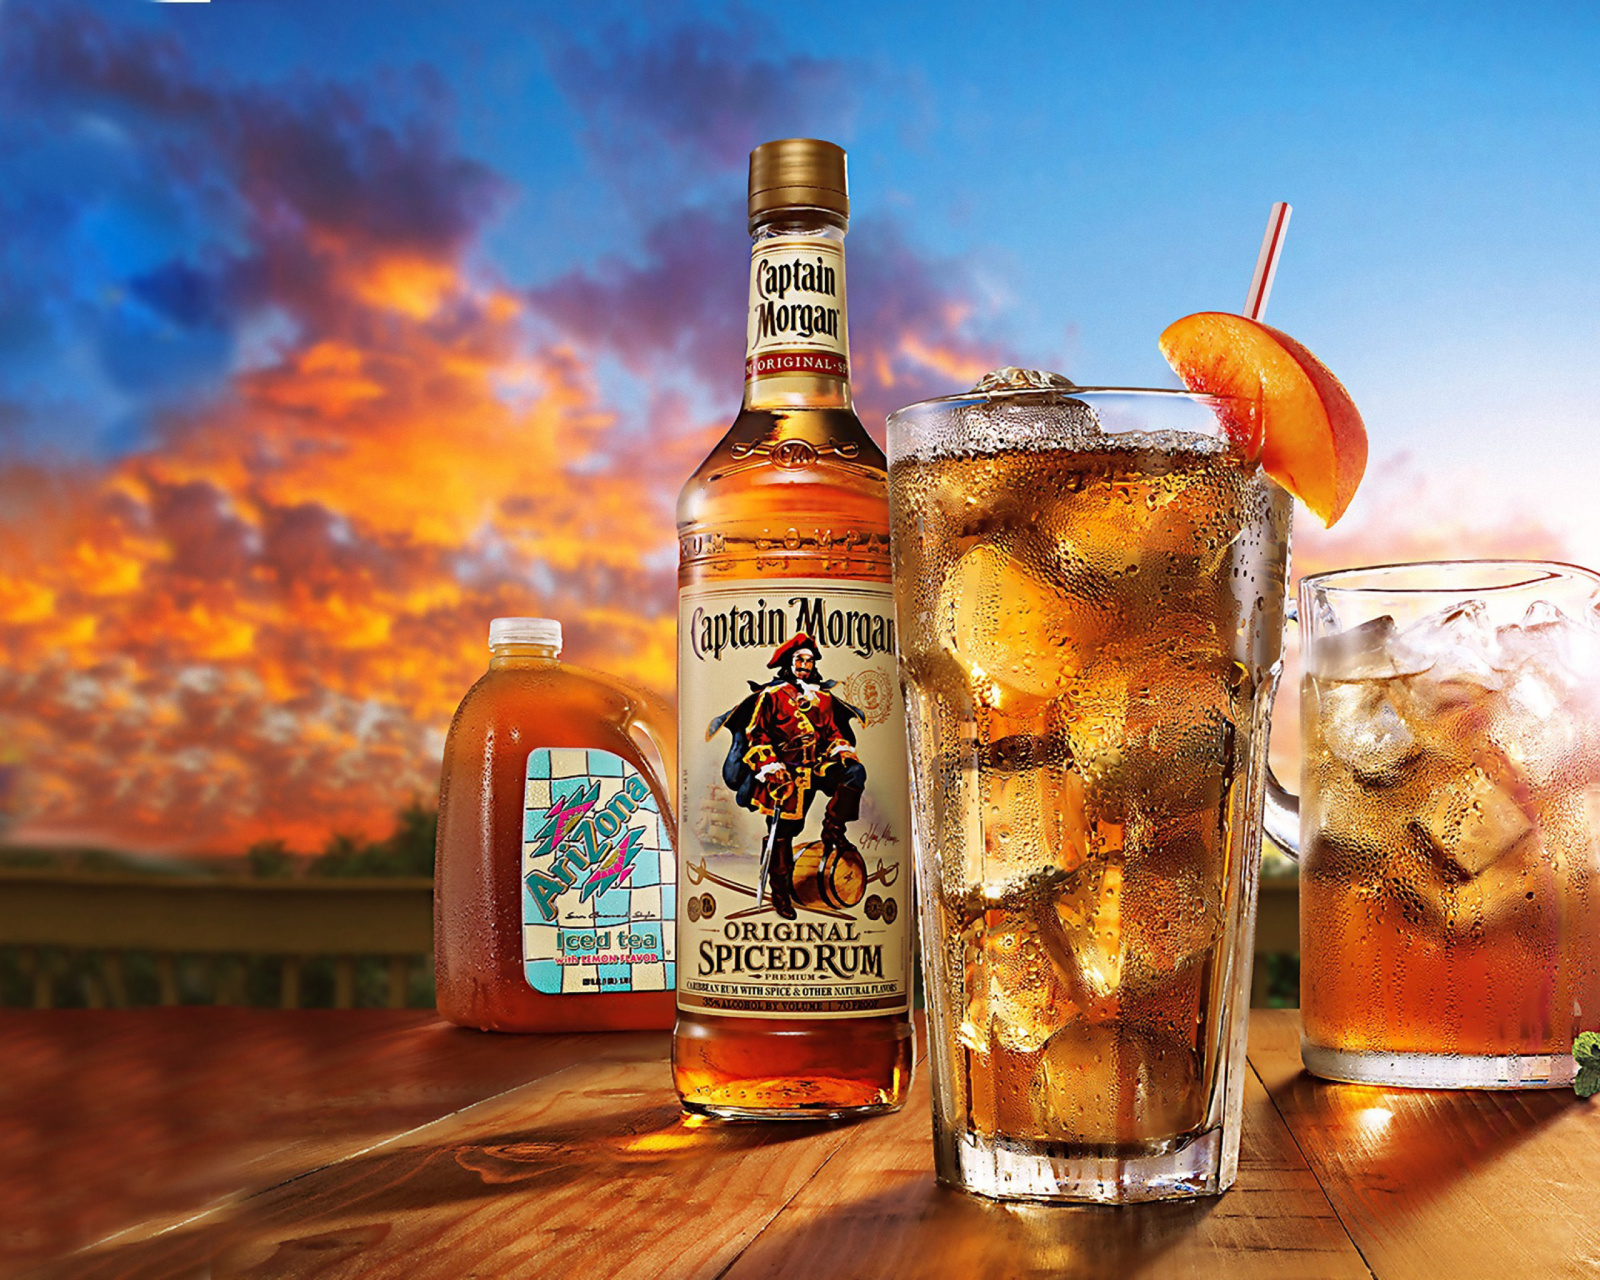 Captain Morgan Rum in Cuba Libre screenshot #1 1600x1280